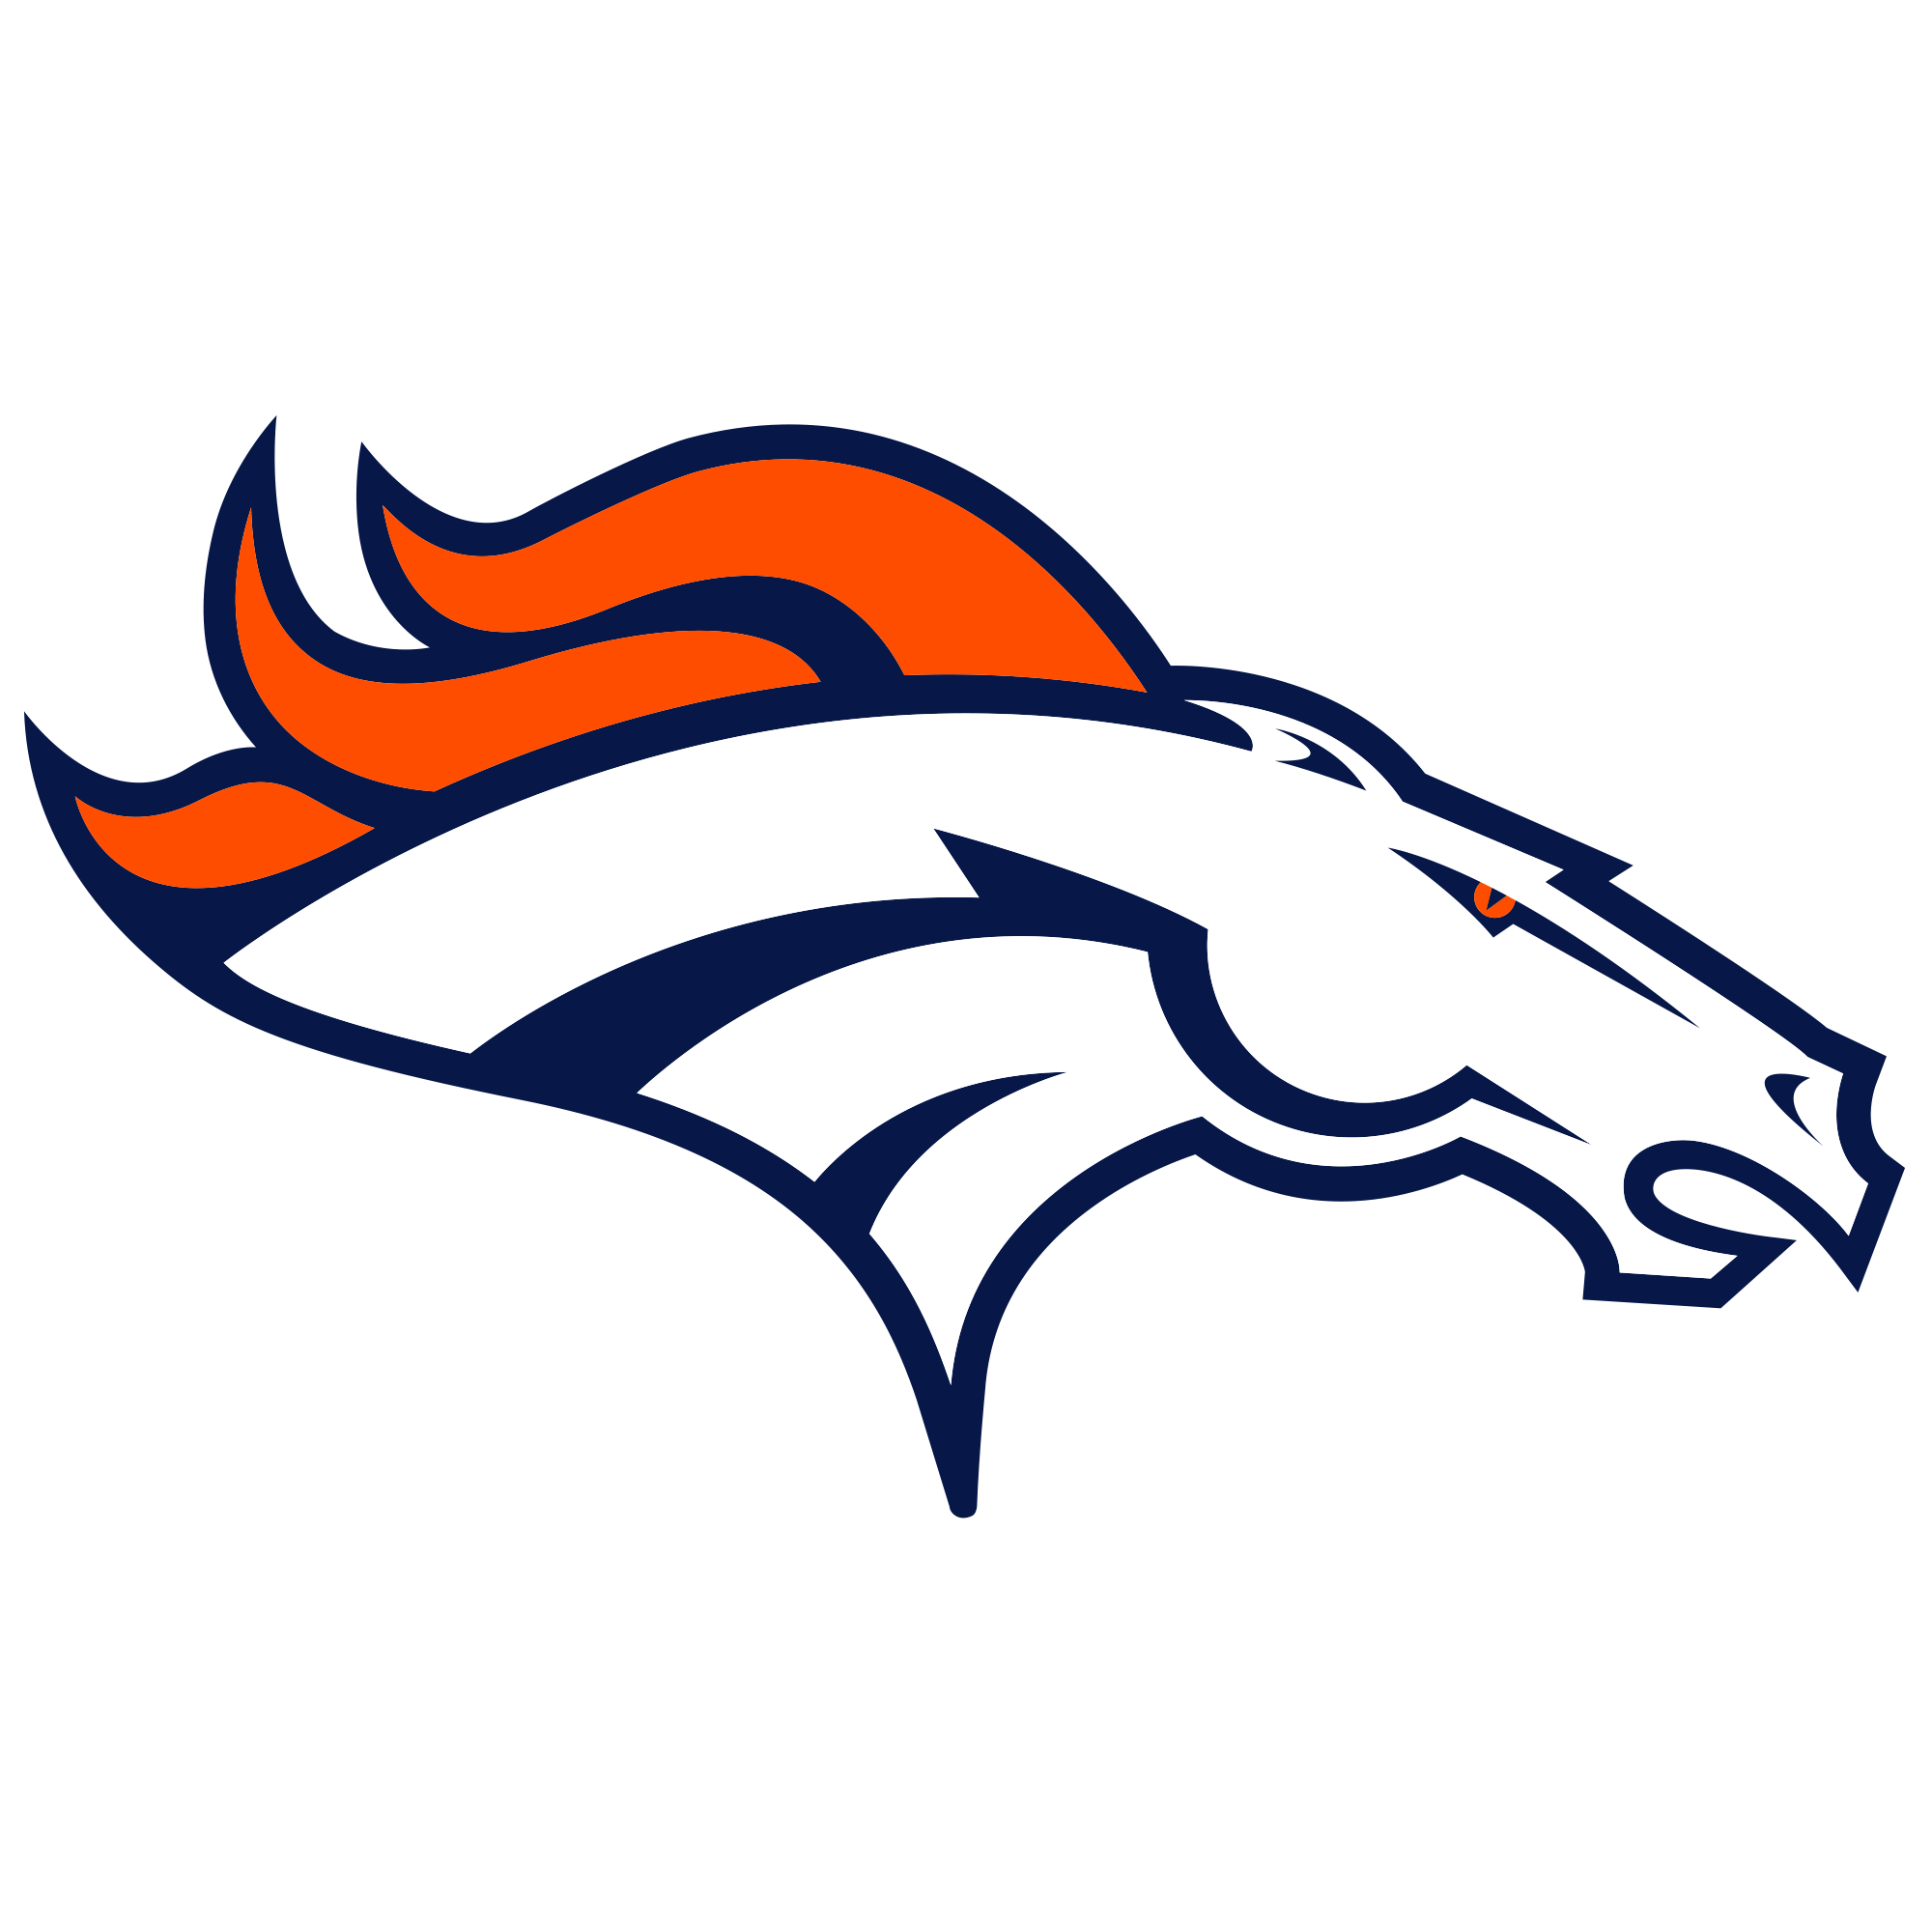 Highlights: Denver Broncos 20-21 San Francisco 49ers in NFL Preseason